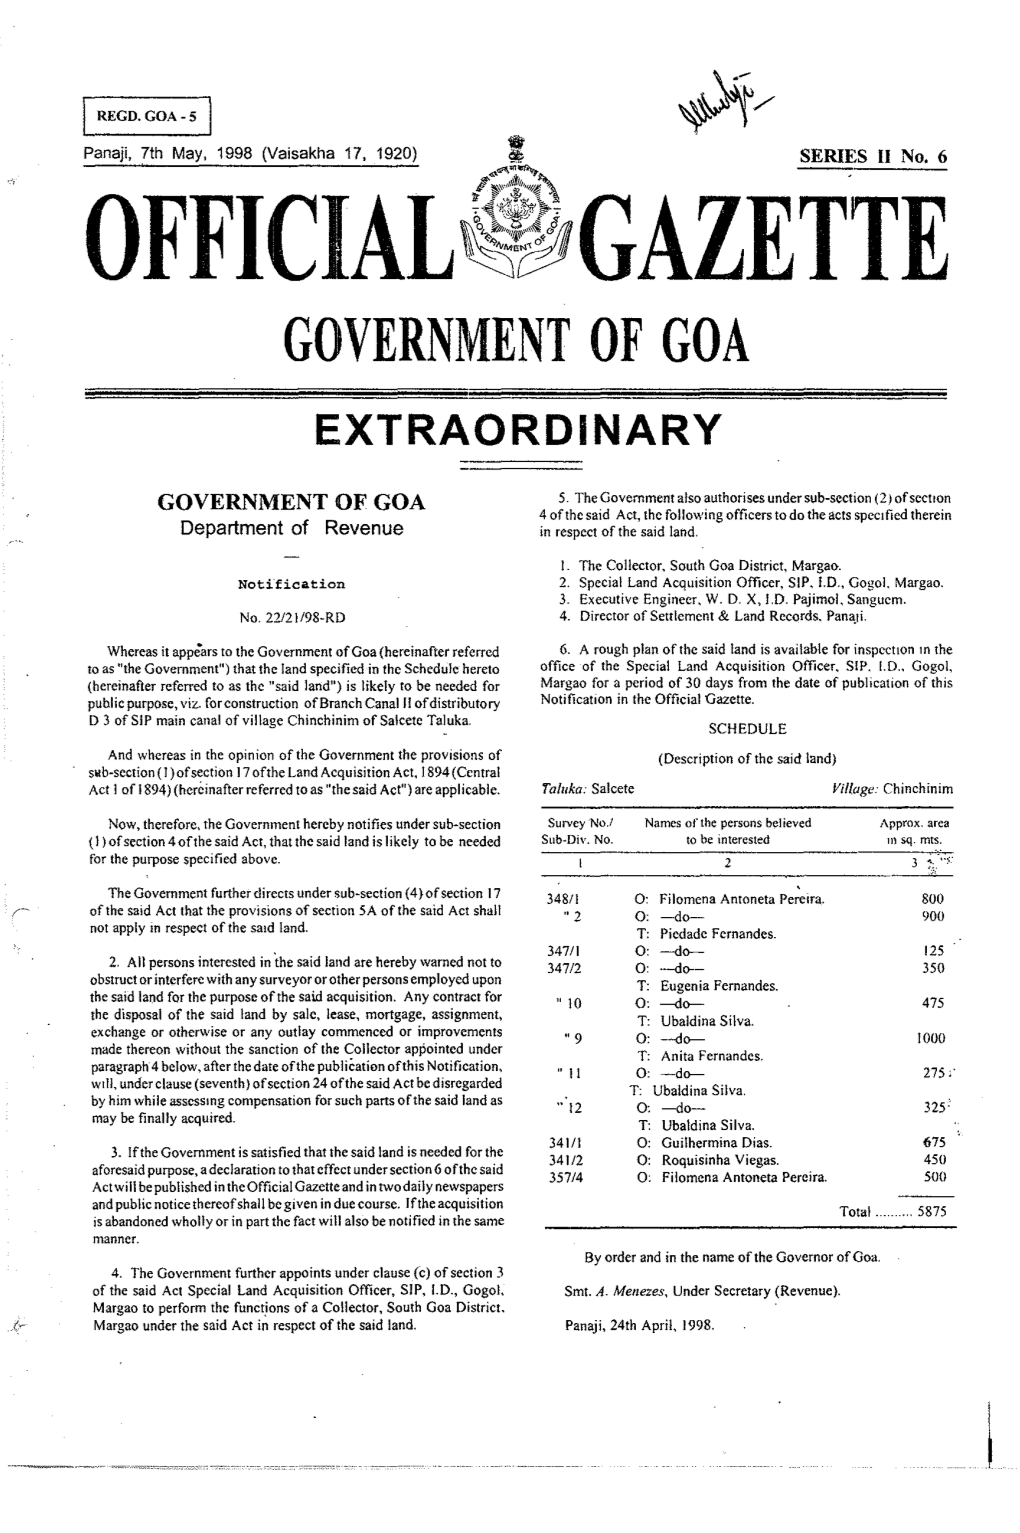 Official~Gazette Government of Goa Extraordinary